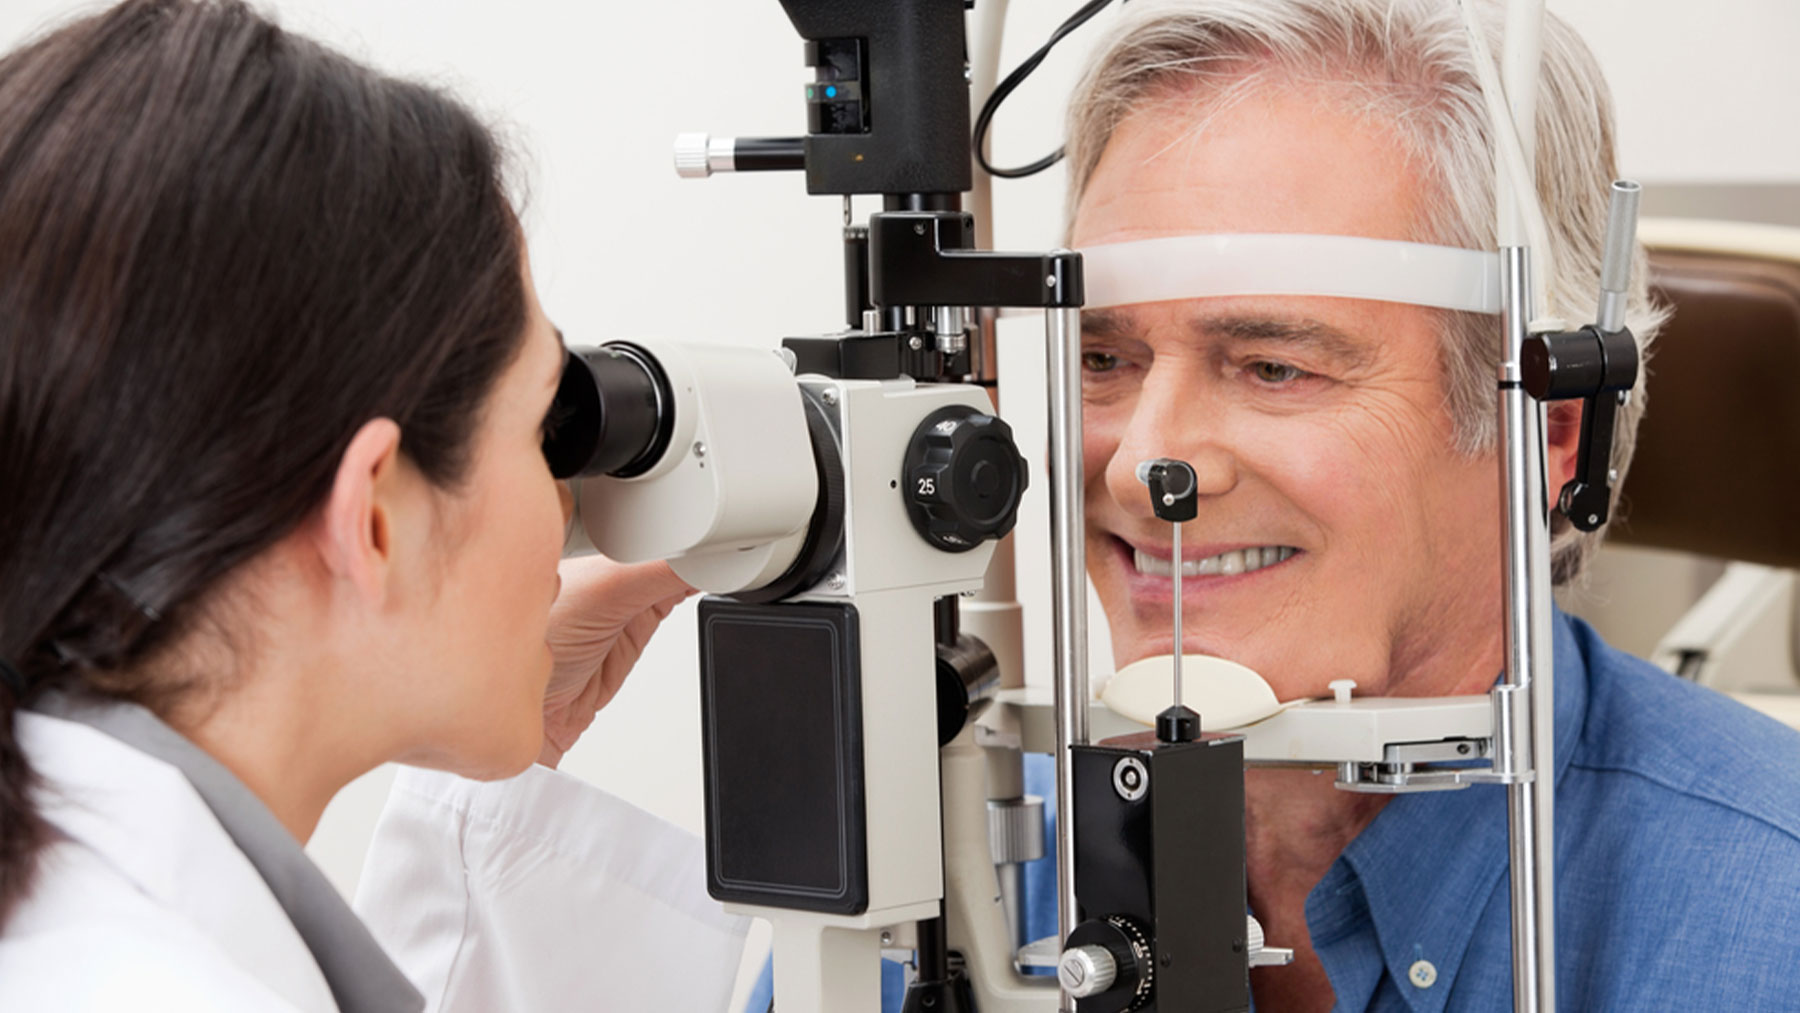 La única forma de detectar el glaucoma es mediante una exploración oftalmológica completa.